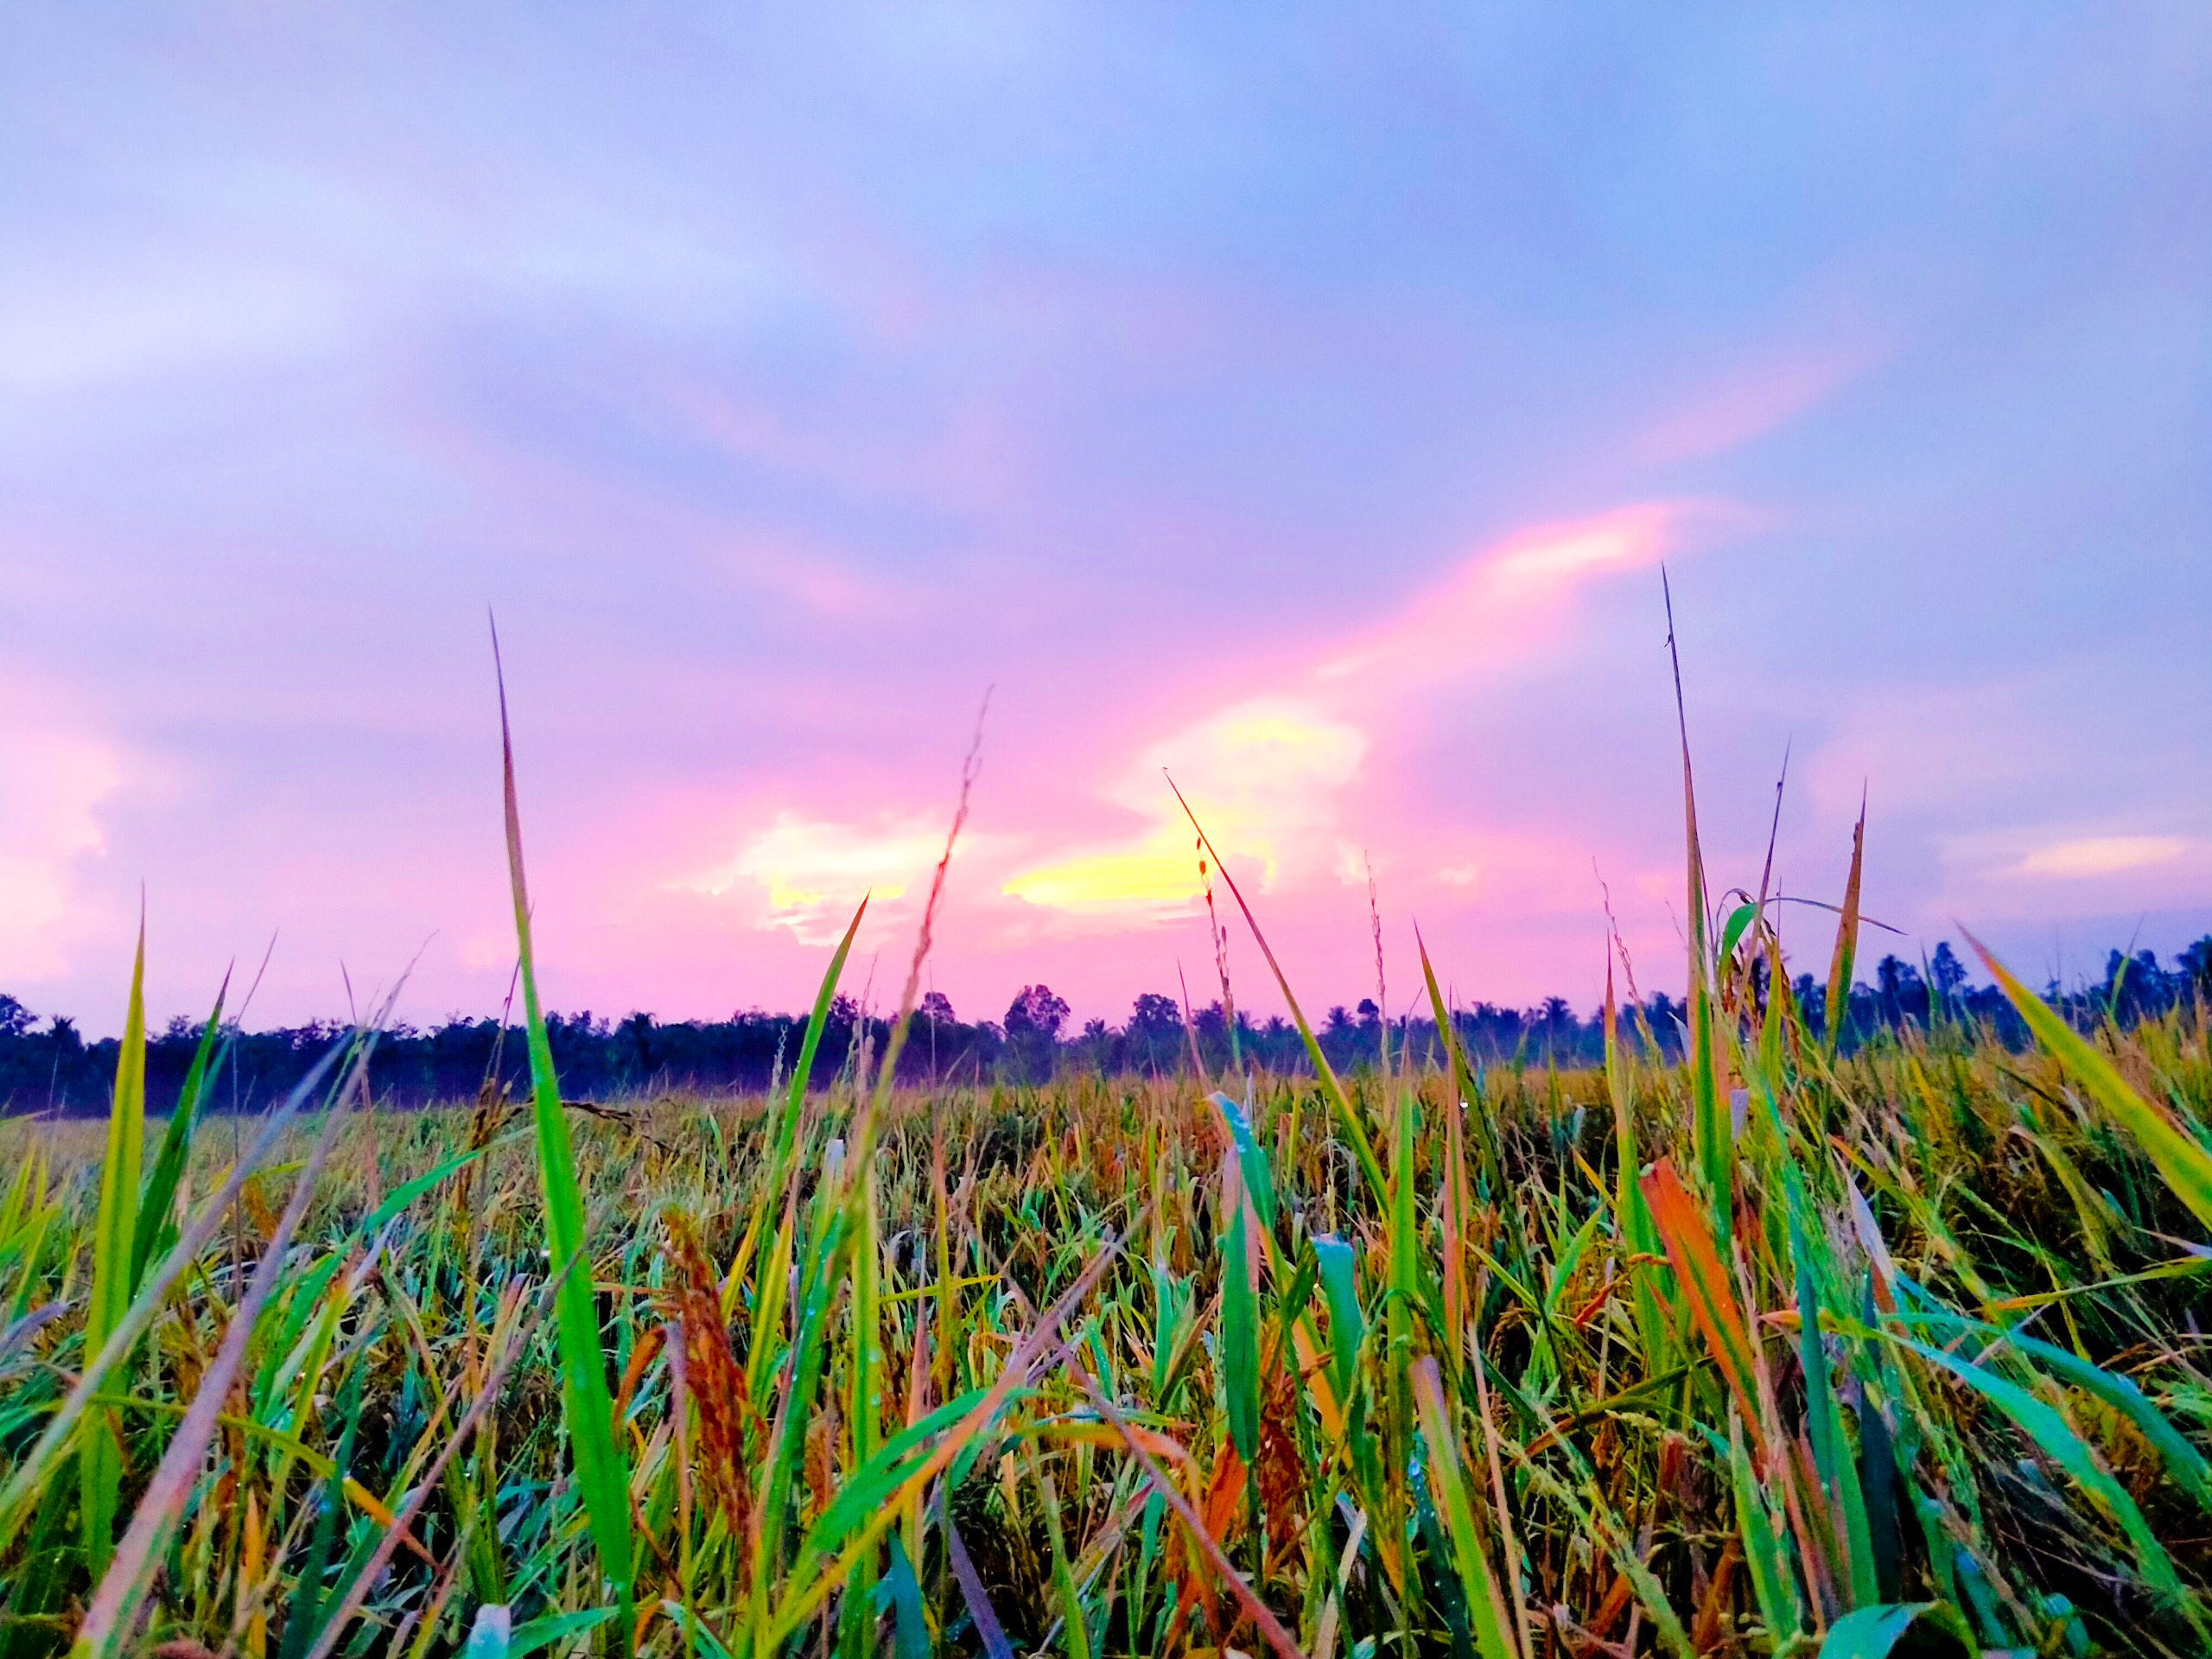 Cánh đồng lúa xanh ngát là nơi đón chào mùa thu mới với nhiều giá trị và trải nghiệm. Đừng bỏ lỡ hình ảnh về cánh đồng lúa đầy màu sắc và đầy nắng sẽ đưa bạn vào thế giới hoàn toàn khác biệt.